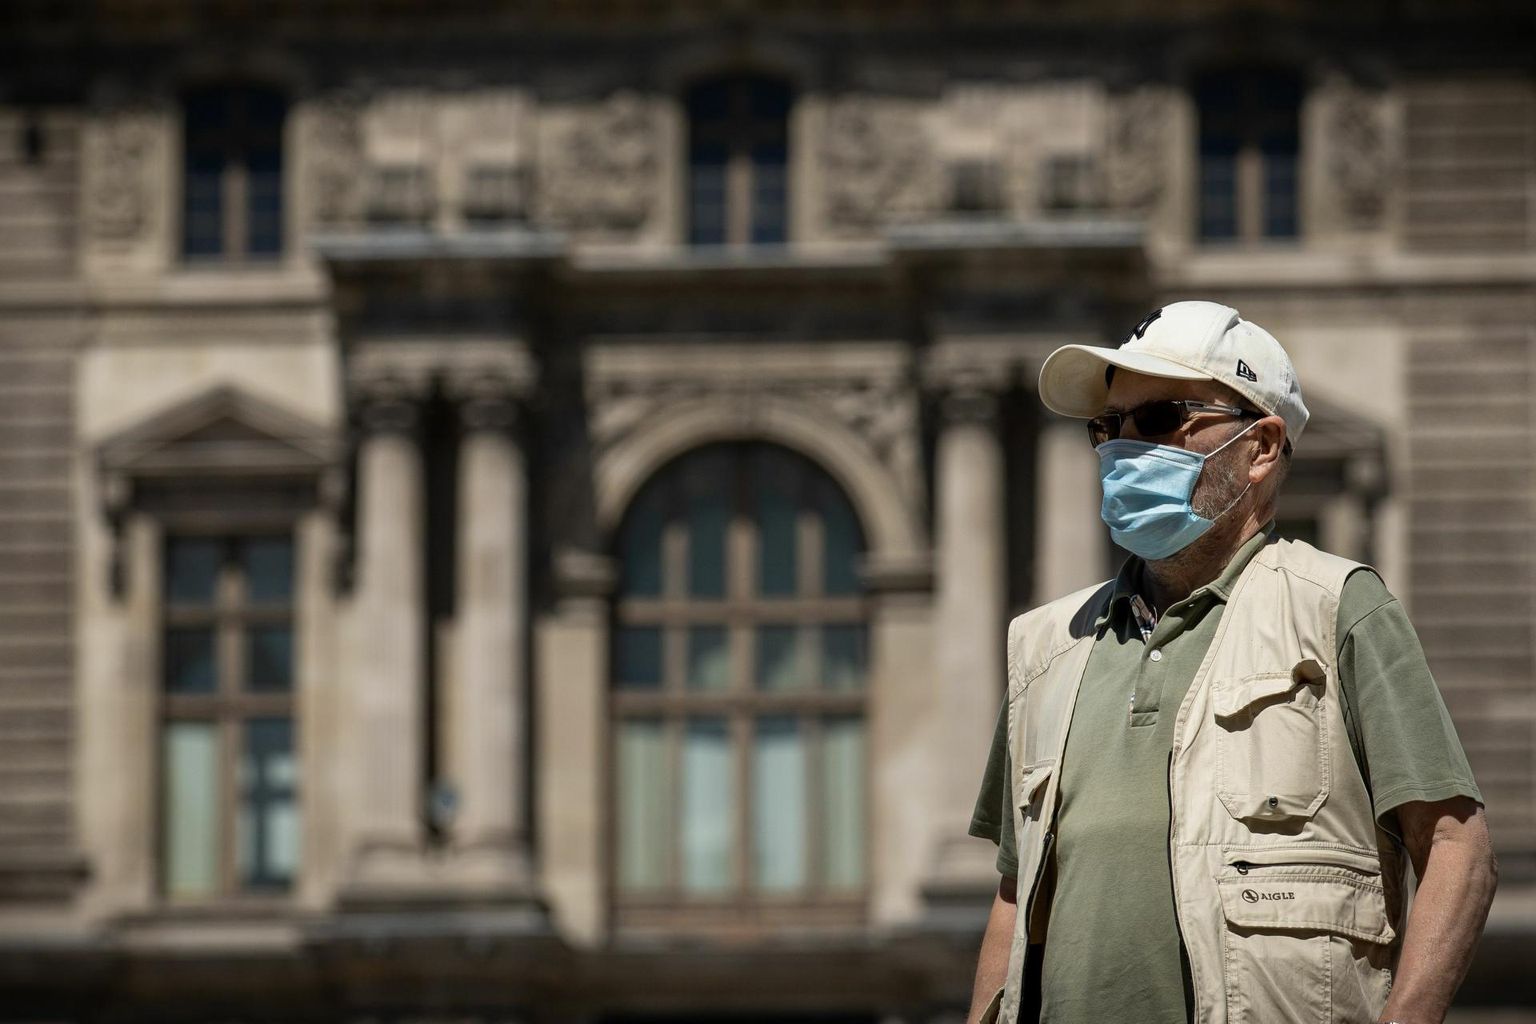 Näomaskis mees Pariisis Louvre’i muuseumi juures. Prantsusmaa valitsus soovitab rahvarohketes kohtades kanda maski, kuid kohustuslikuks seda teha ei soovi. 